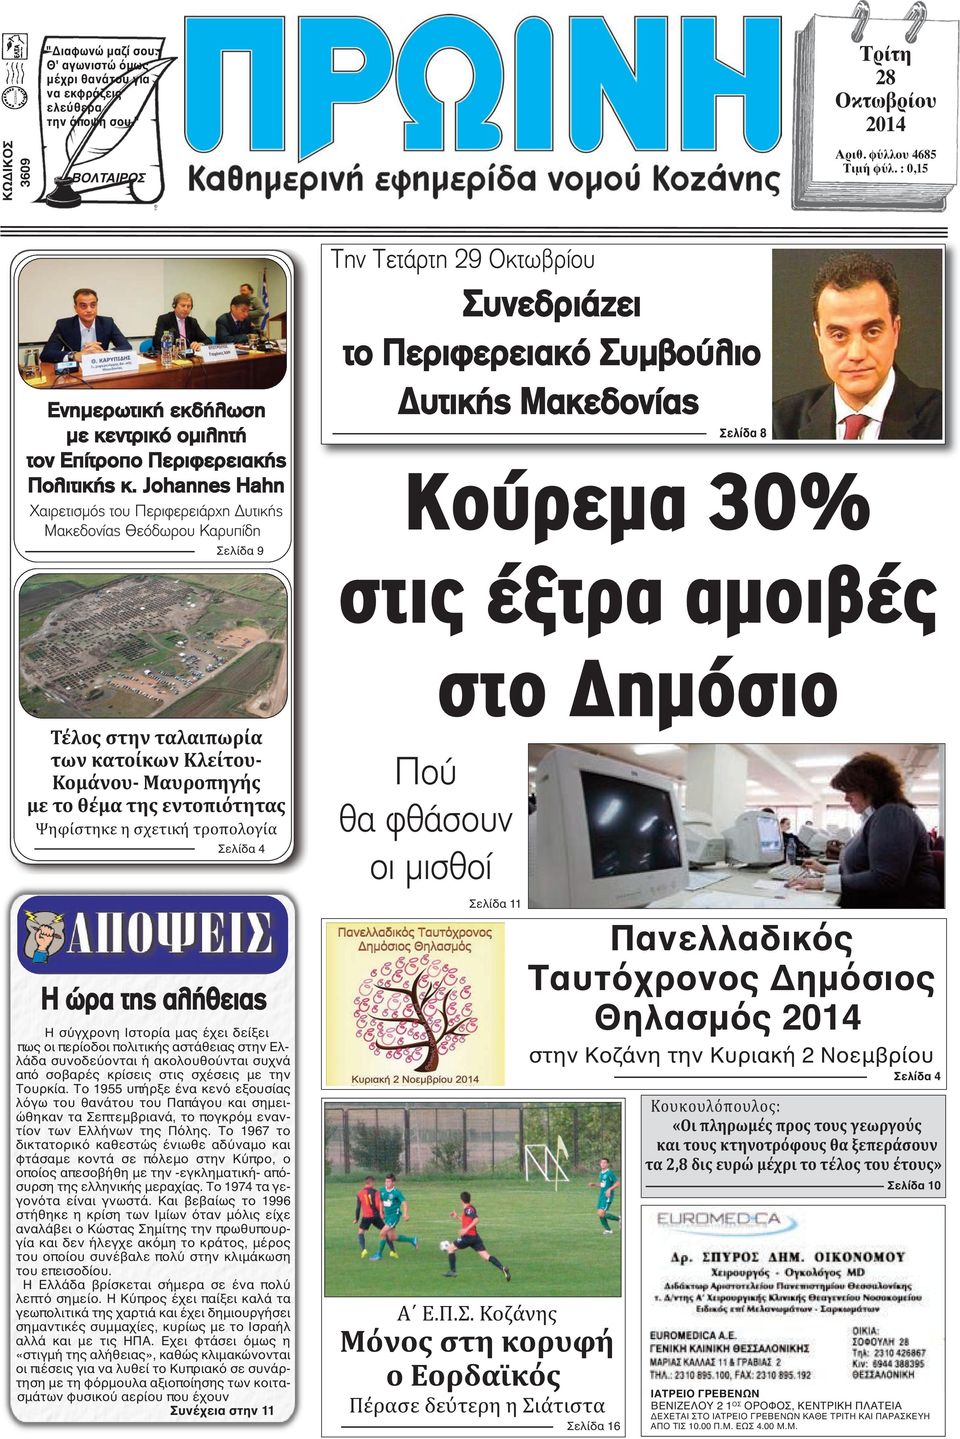 Johannes Hahn Χαιρετισμός του Περιφερειάρχη Δυτικής Μακεδονίας Θεόδωρου Καρυπίδη Σελίδα 9 Την Τετάρτη 29 Οκτωβρίου Συνεδριάζει το Περιφερειακό Συμβούλιο Δυτικής Μακεδονίας Σελίδα 8 Κούρεμα 30% στις